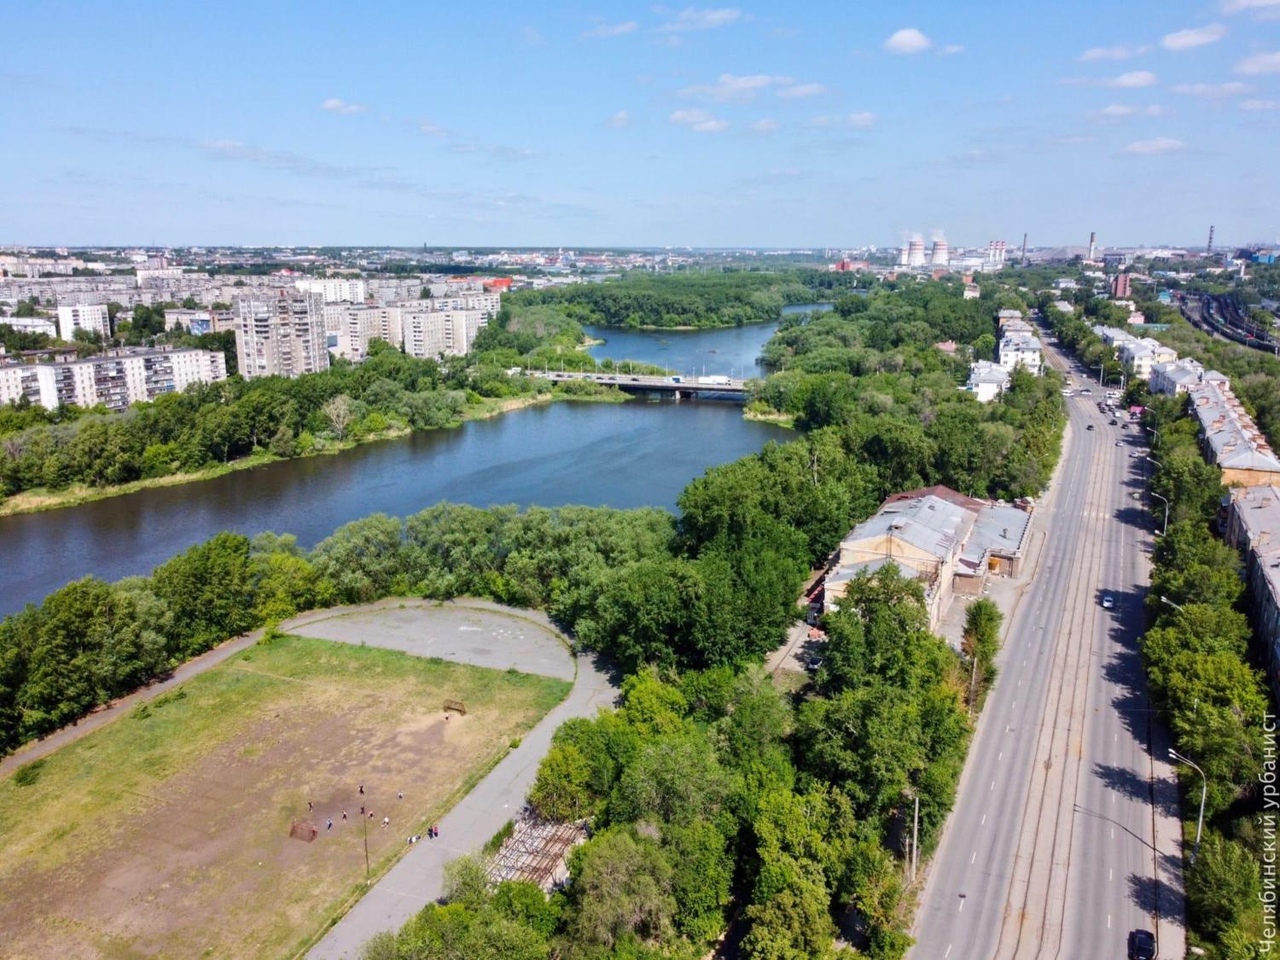 Ленинградский мост набережной реки Миасс